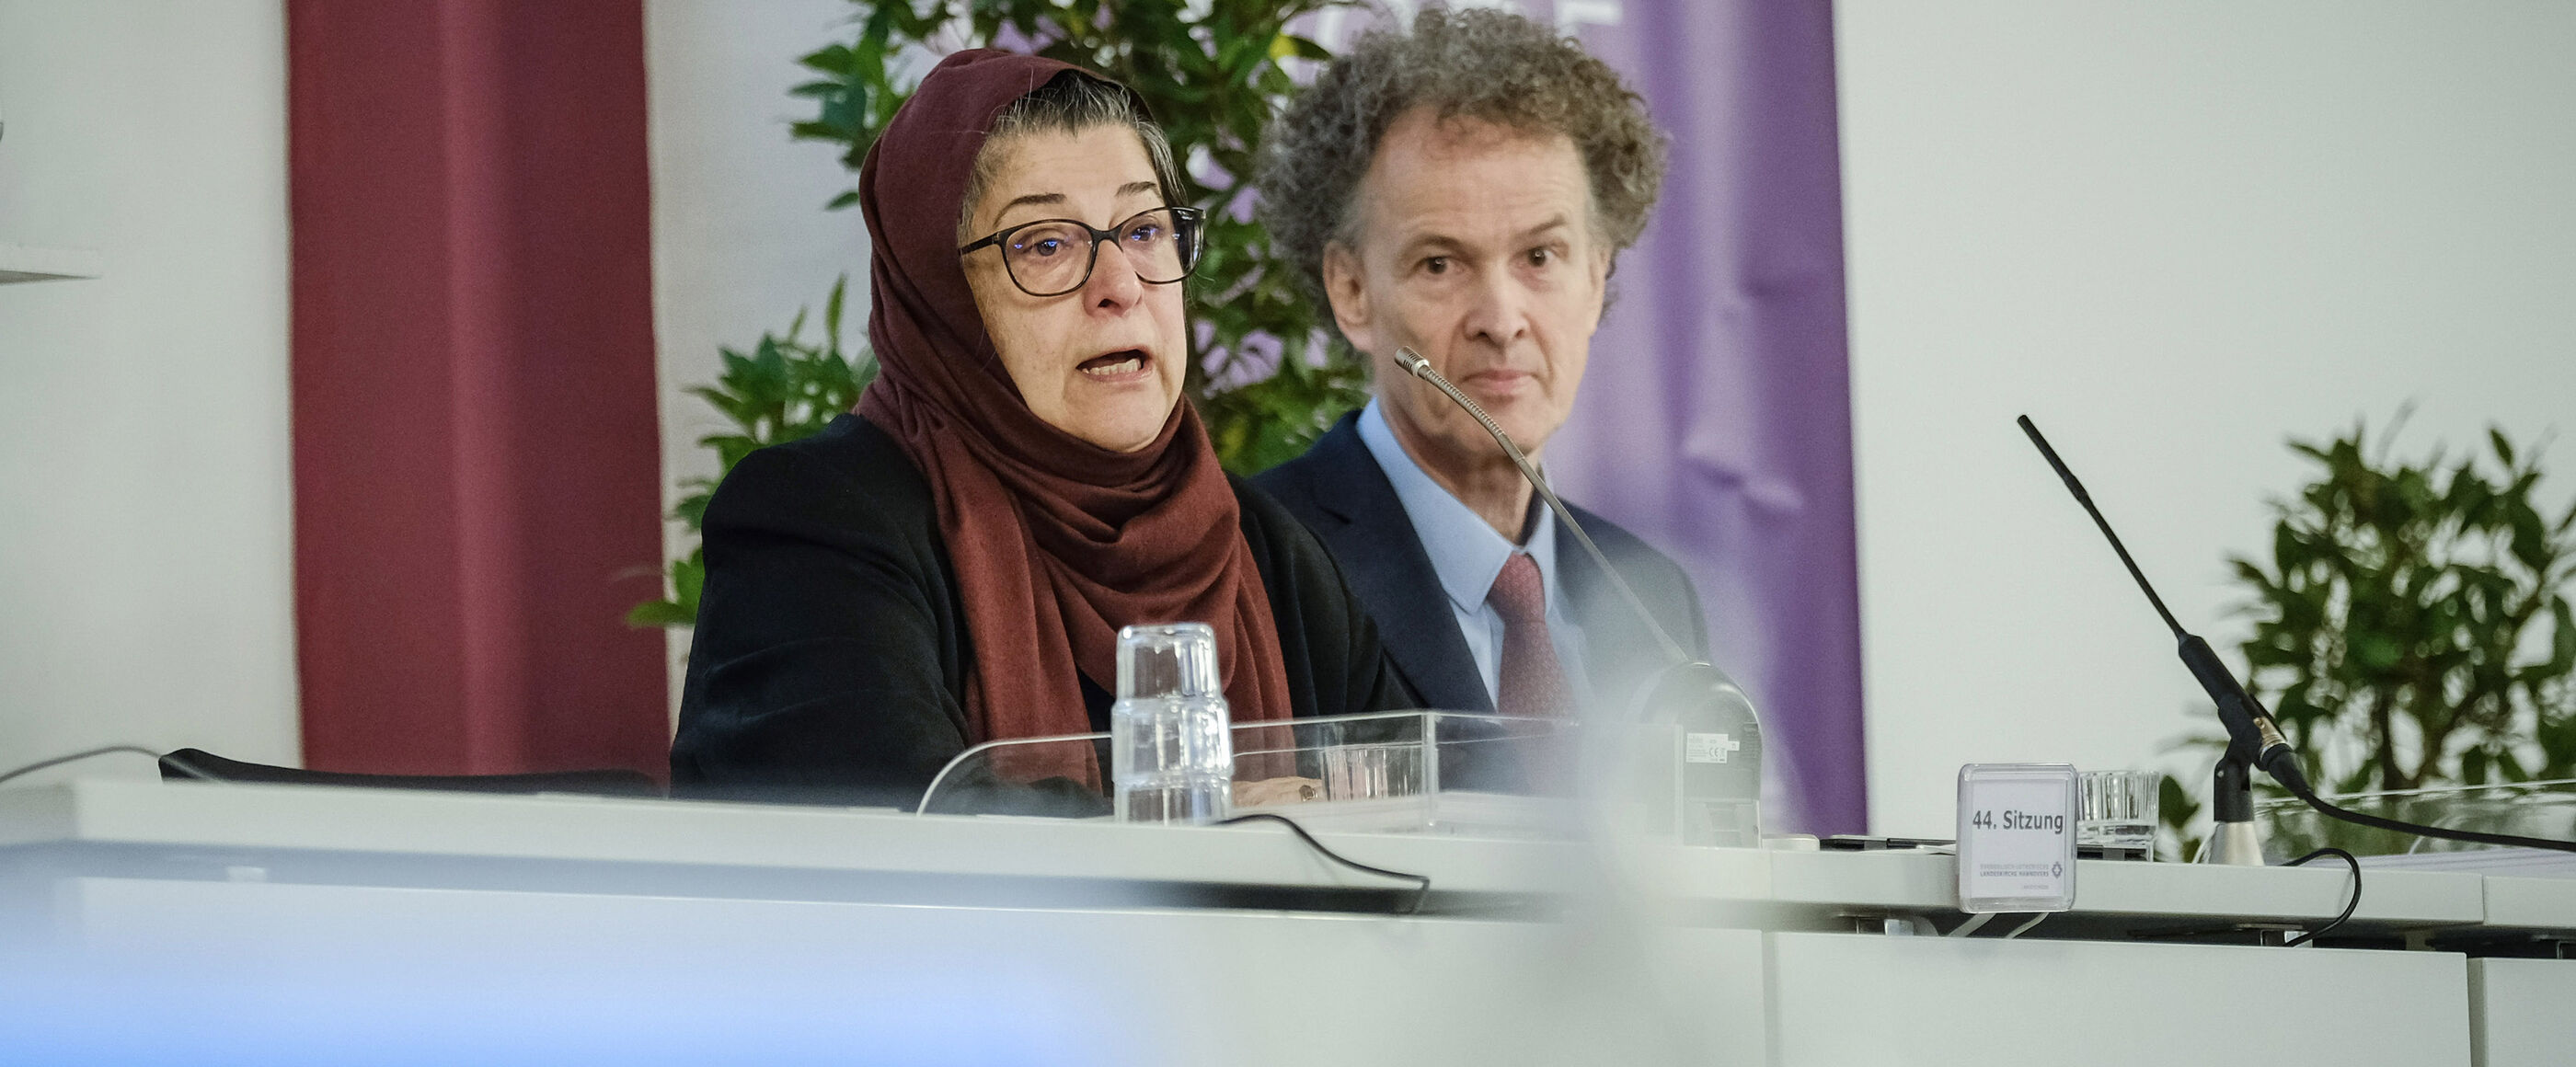 Eine weiblich lesbare Person mit islamischem Kopftuch, eine weiblich lesbare Person mit Schal und eine männlich lesbare Person im Anzug sitzen nebeneinander